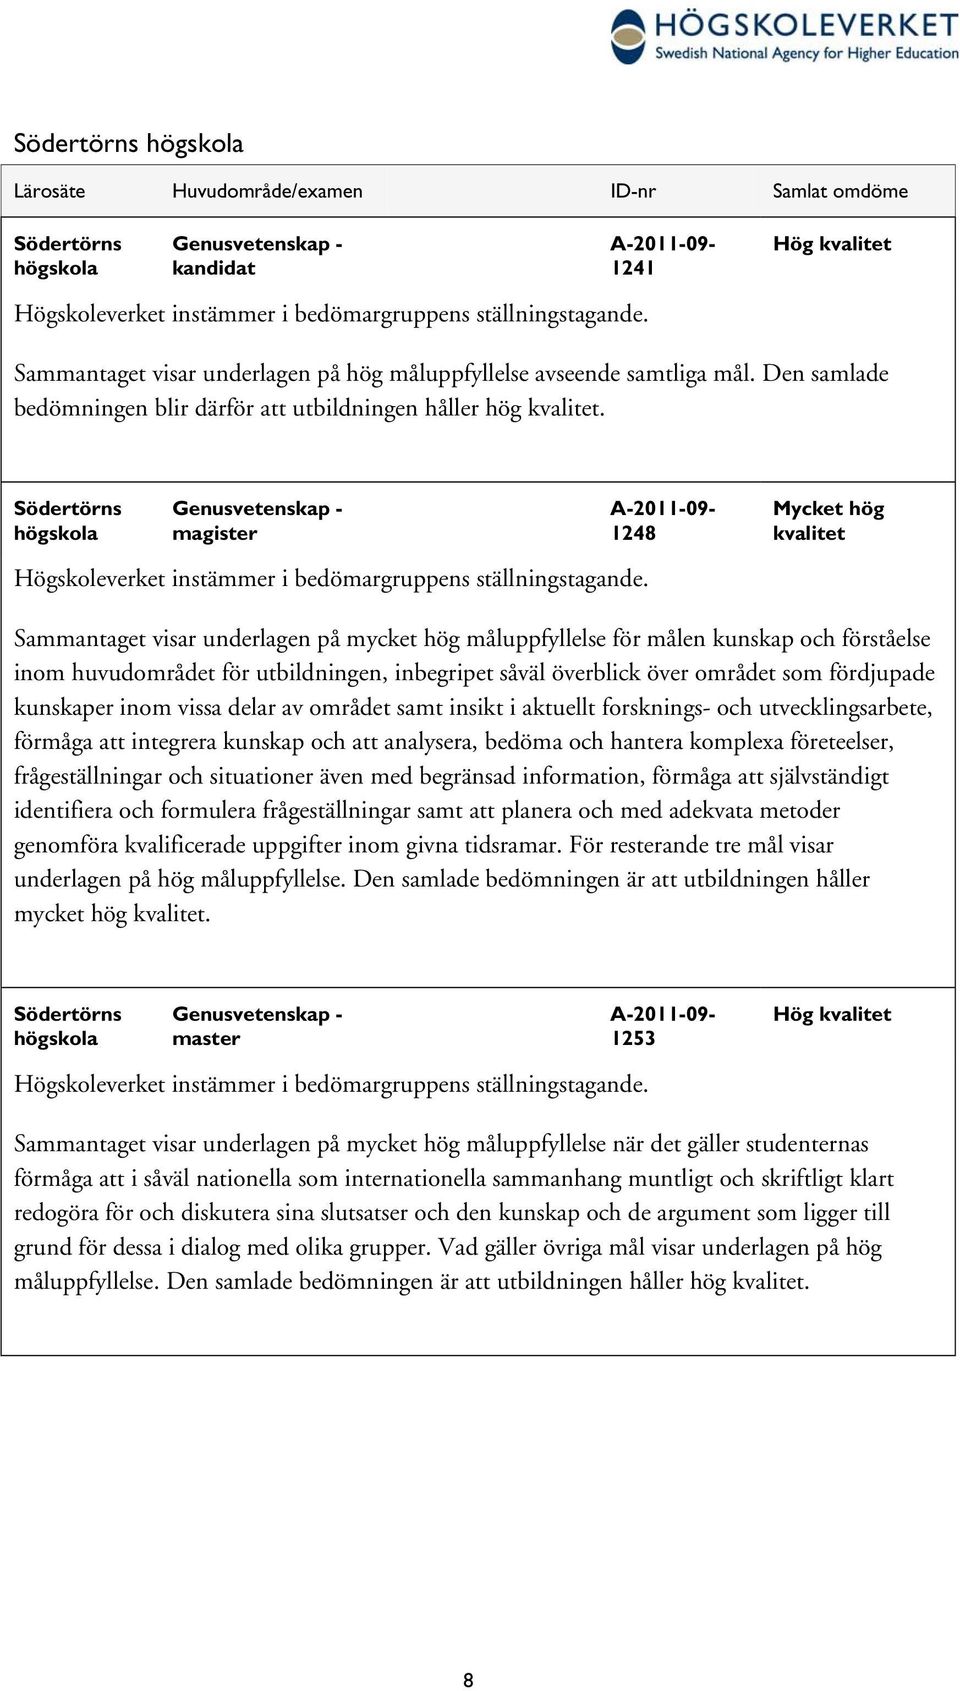 Södertörns högskola Genusvetenskap - magister A-2011-09- 1248 Mycket hög kvalitet Högskoleverket instämmer i bedömargruppens ställningstagande.